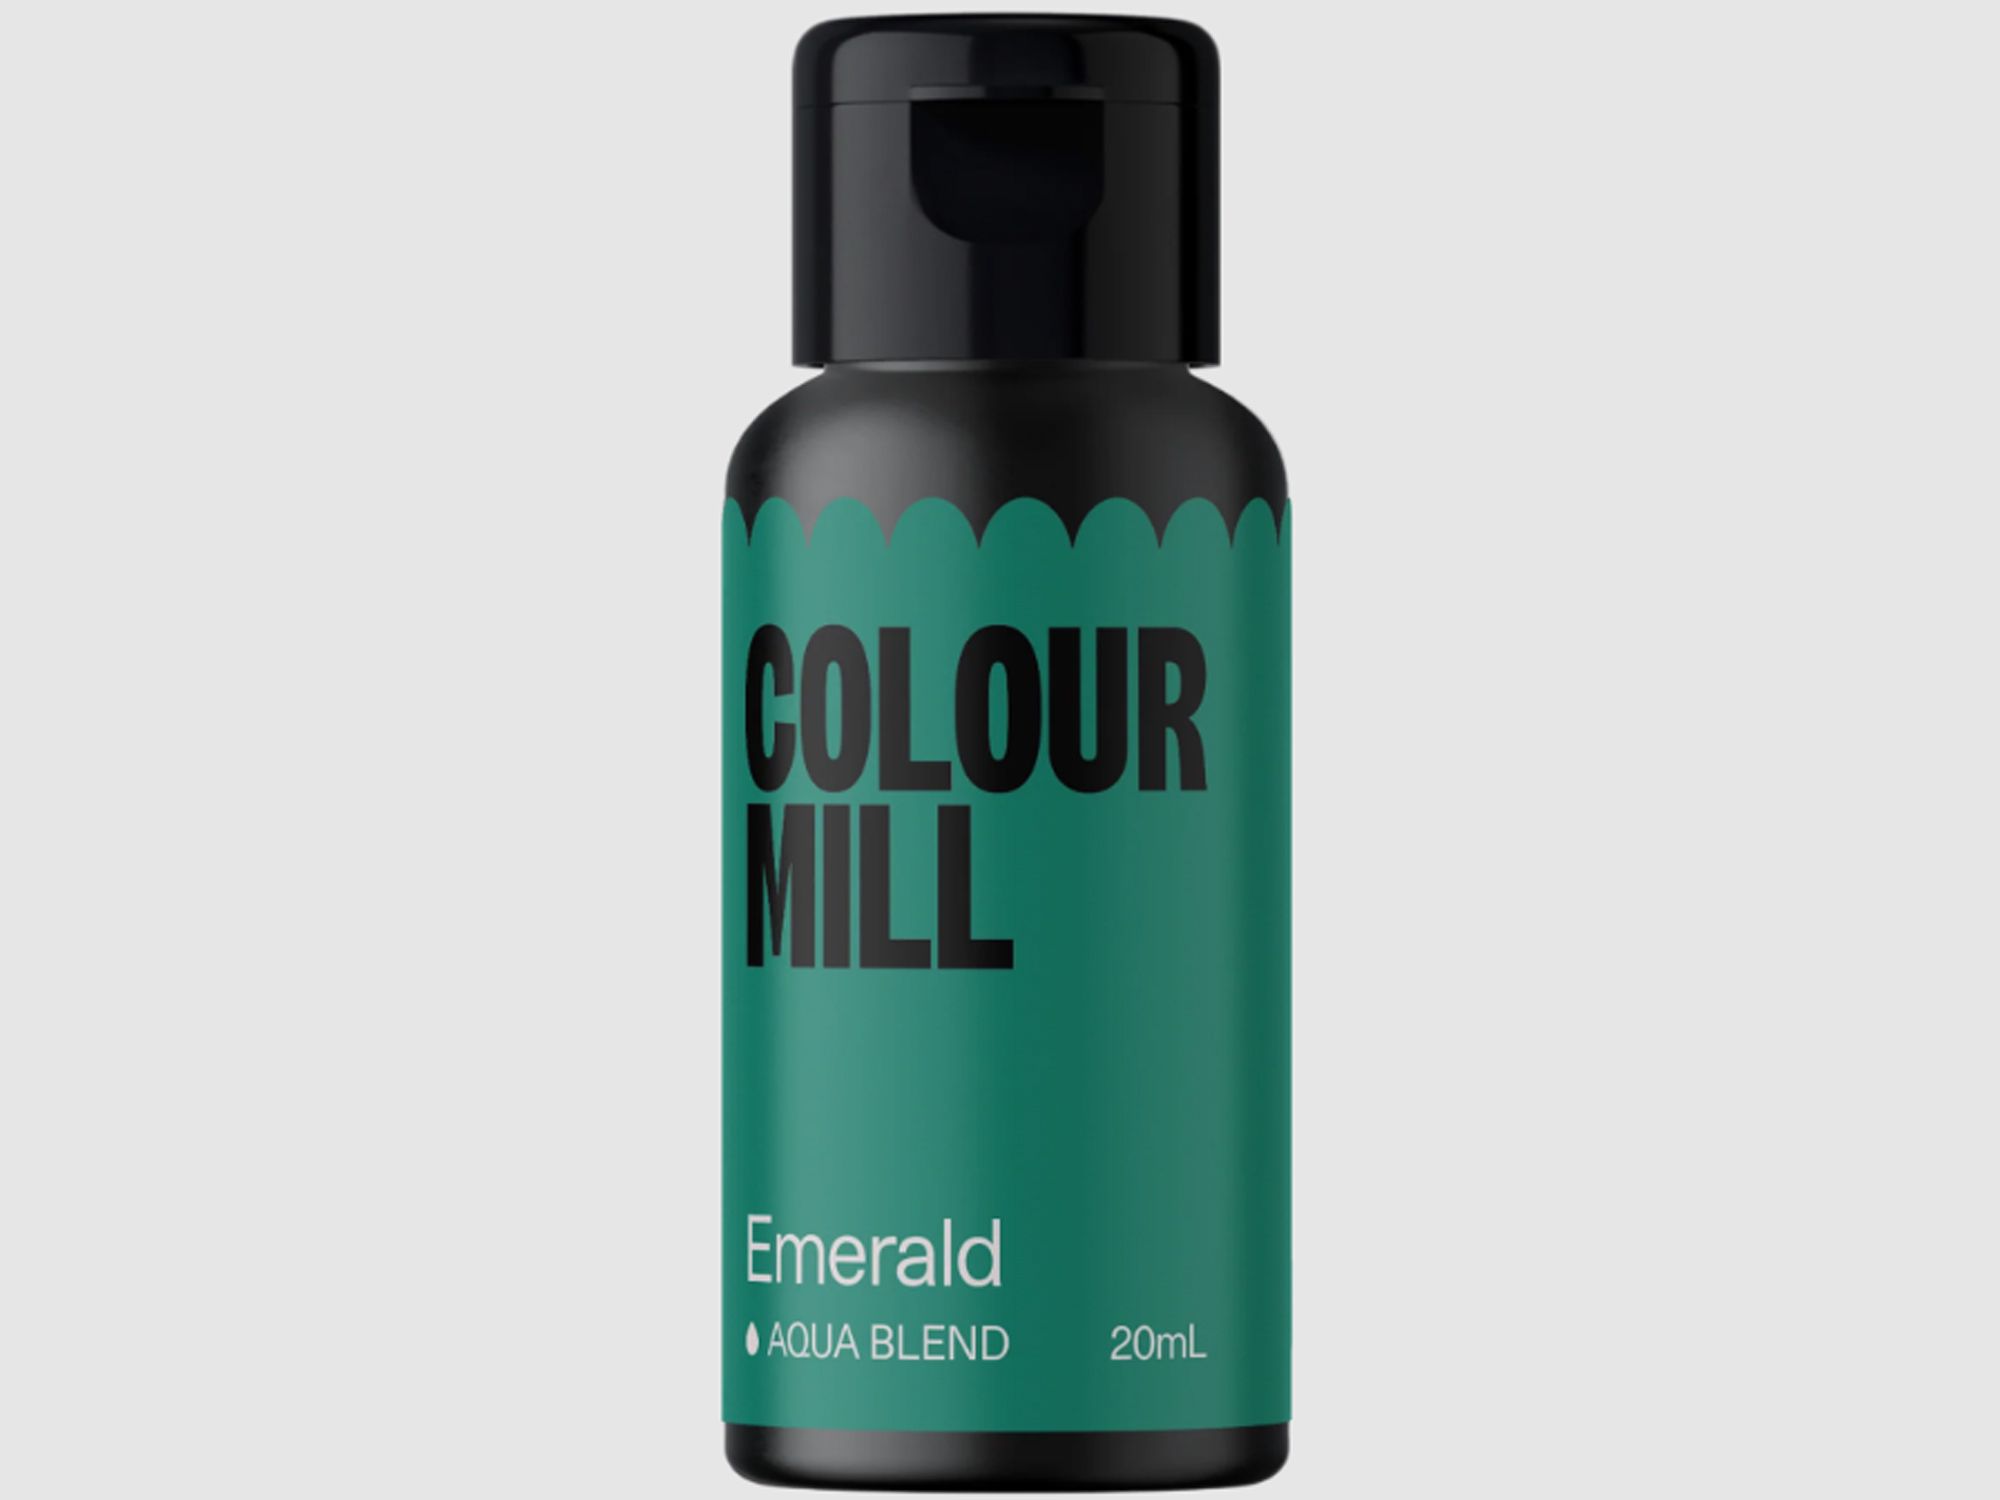 Colour Mill Emerald (Aqua Blend) 20ml